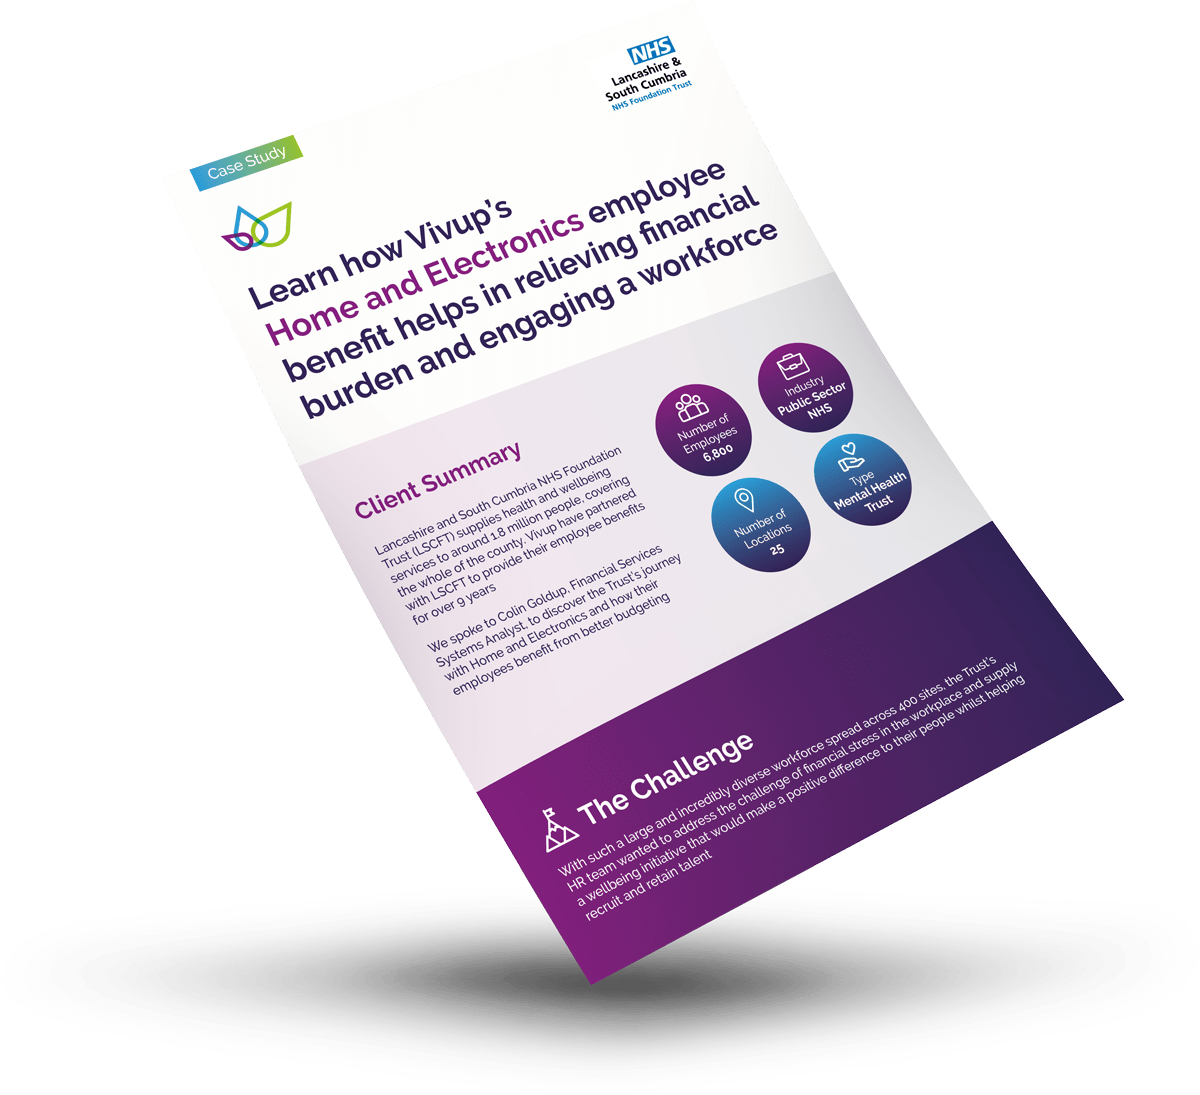 Lancashire & South Cumbria NHS Foundation Client Case Study Sheet